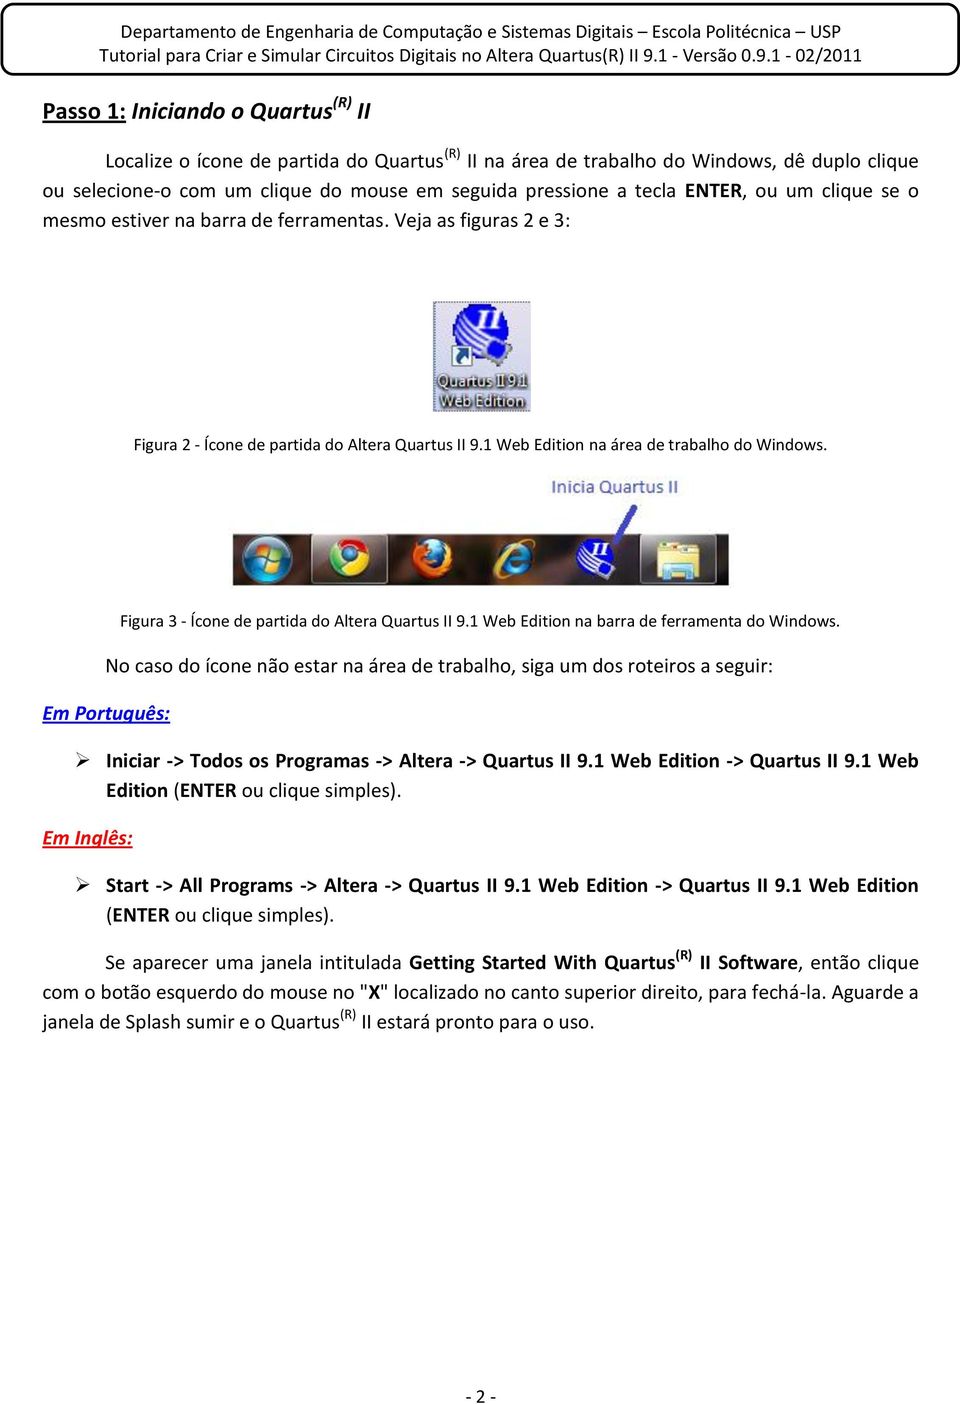 Figura 3 - Ícone de partida do Altera Quartus II 9.1 Web Edition na barra de ferramenta do Windows.